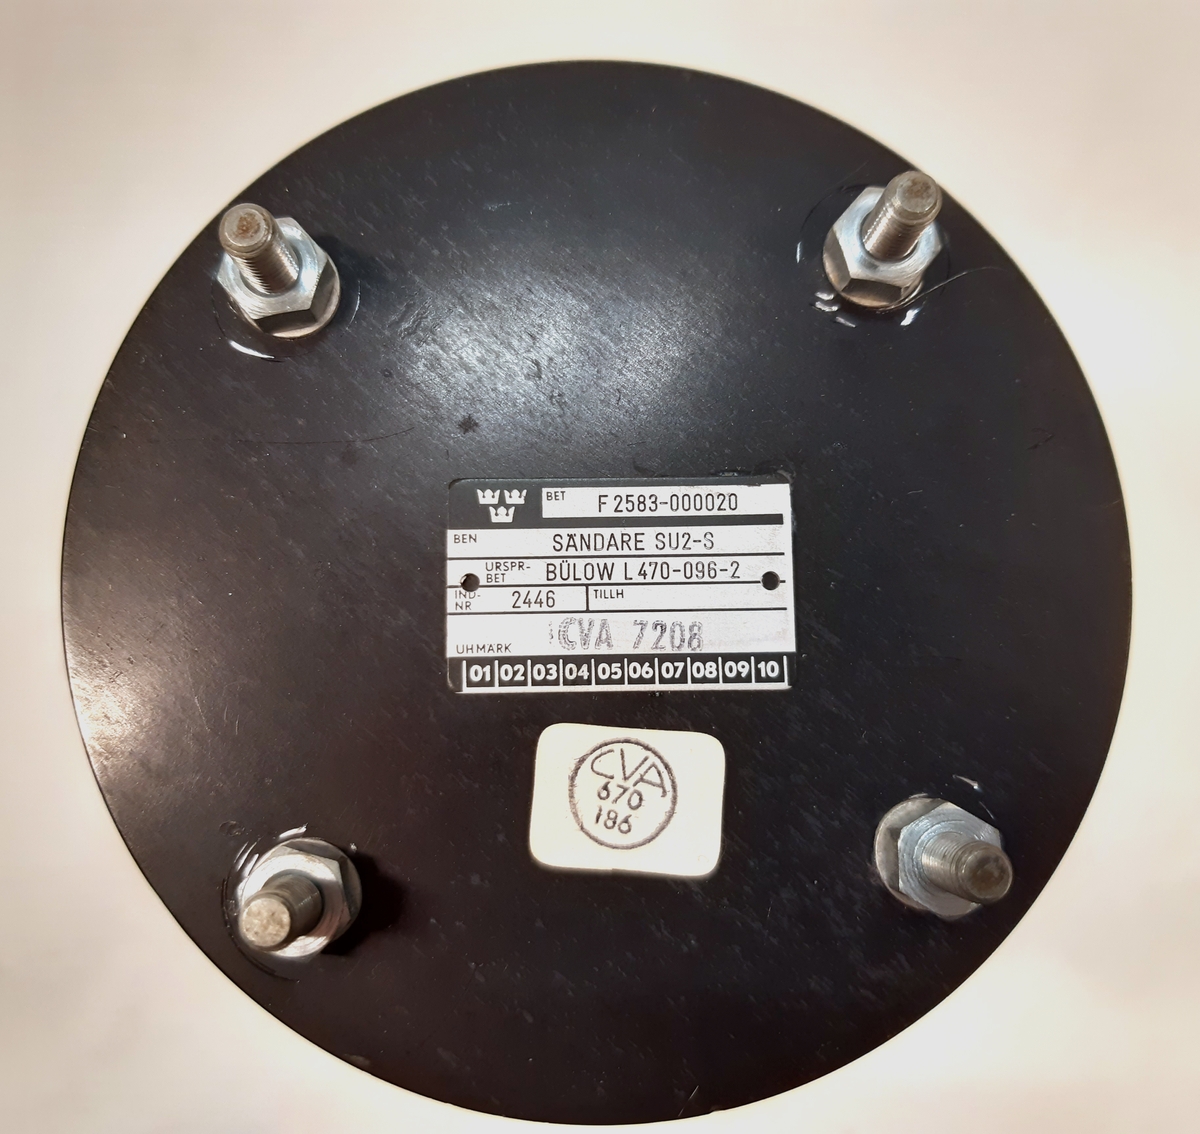 Sändare SU2-S, ind-nr: 2446. Sändaren består av en cylinderformad behållare i svart metall.